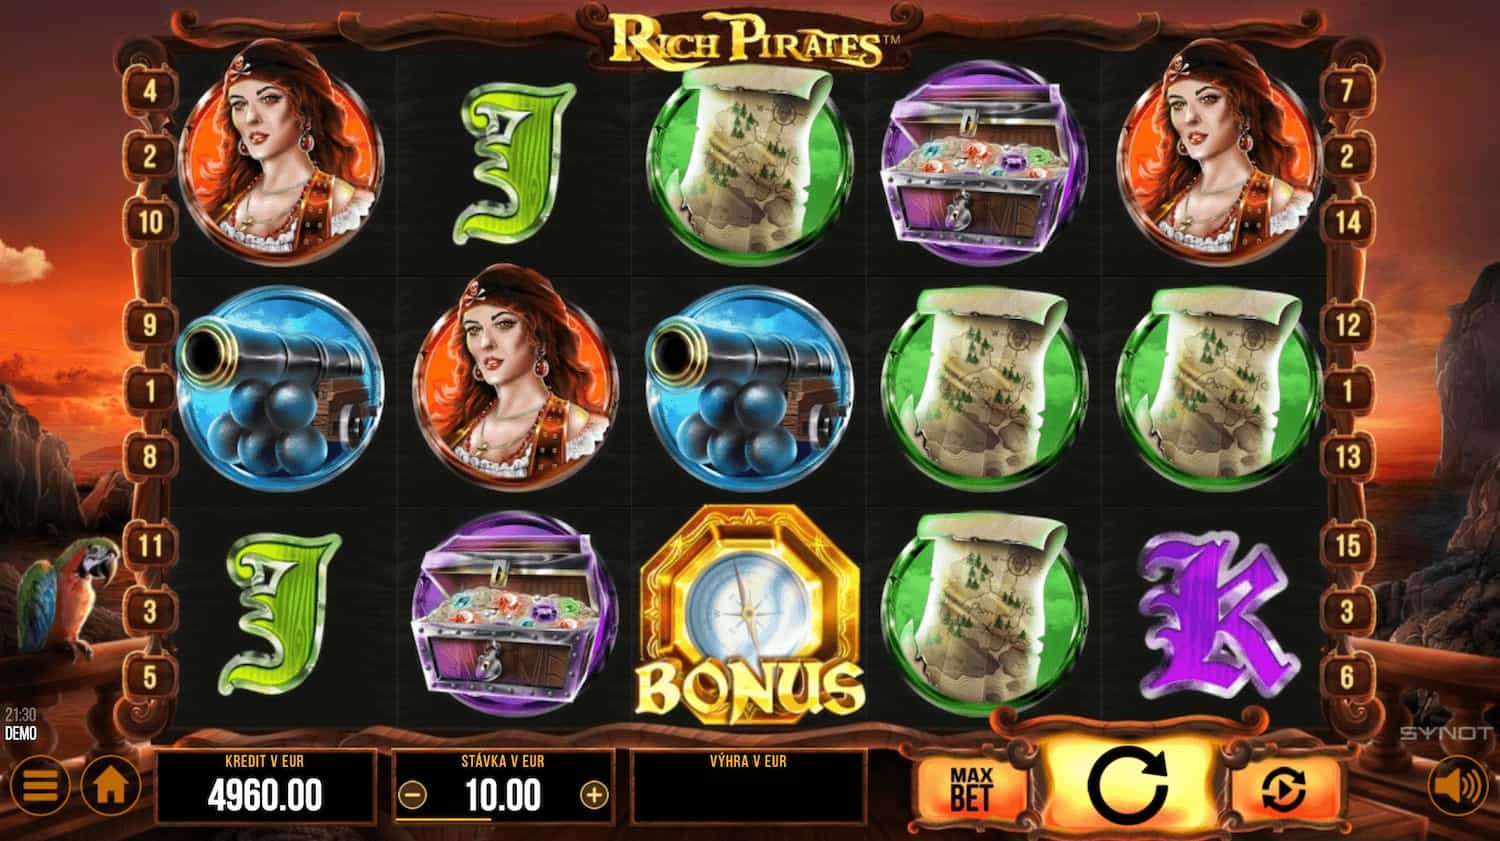 Rich Pirates - automat od SYNOT Games - ukážka